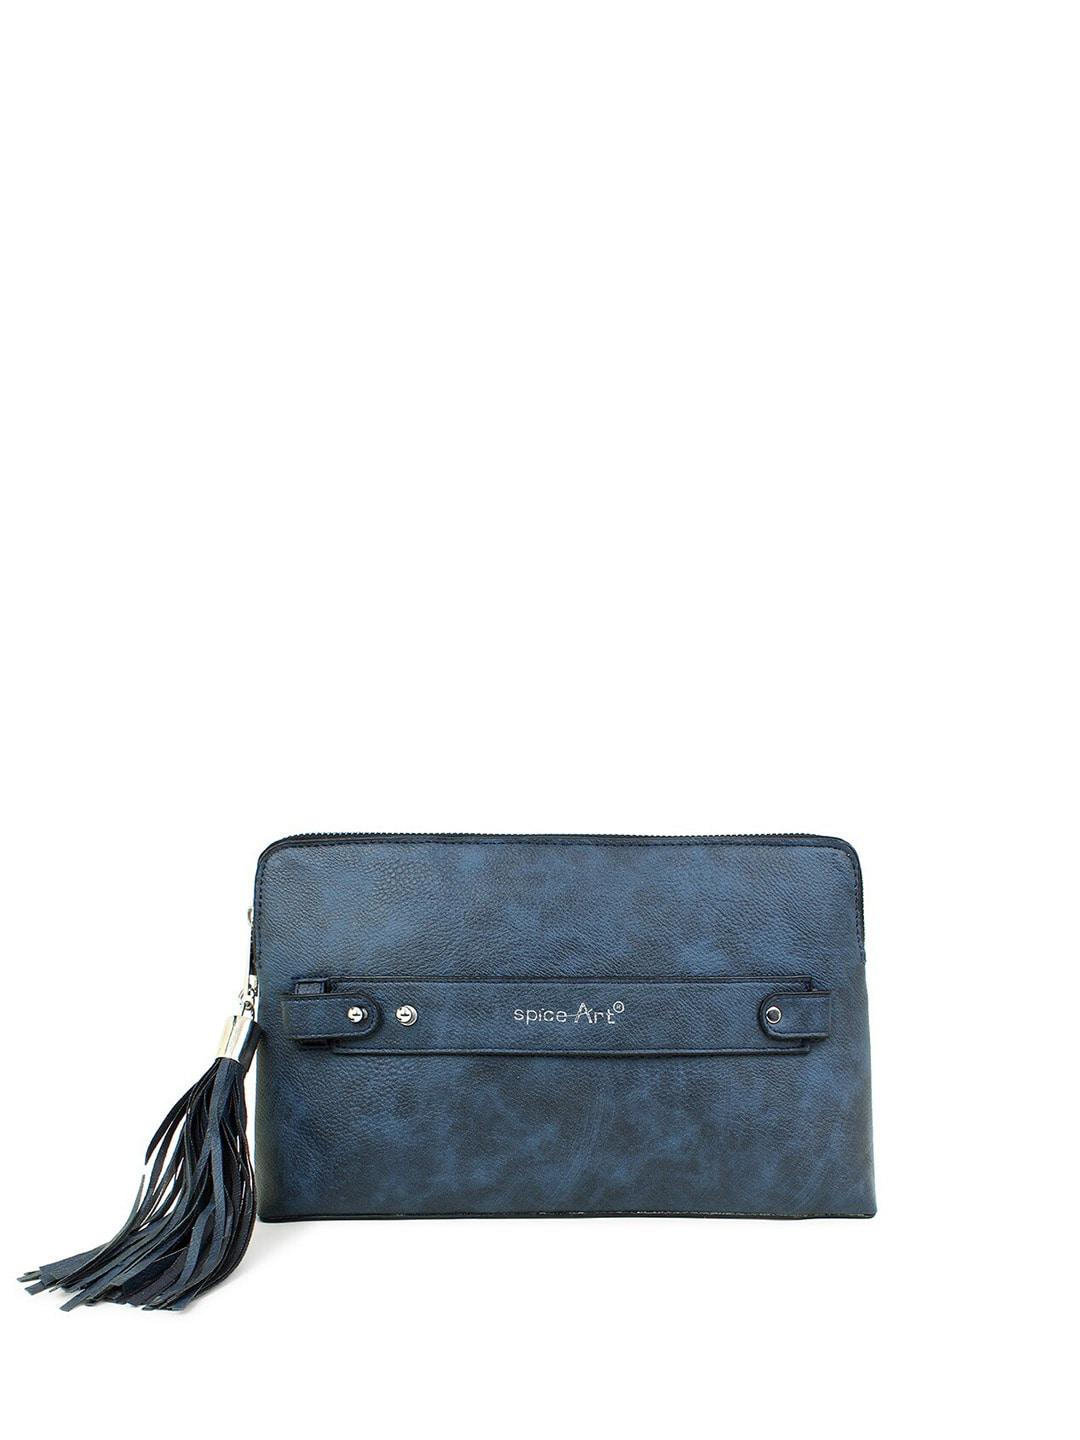 spice art navy blue textured tasselled purse clutch